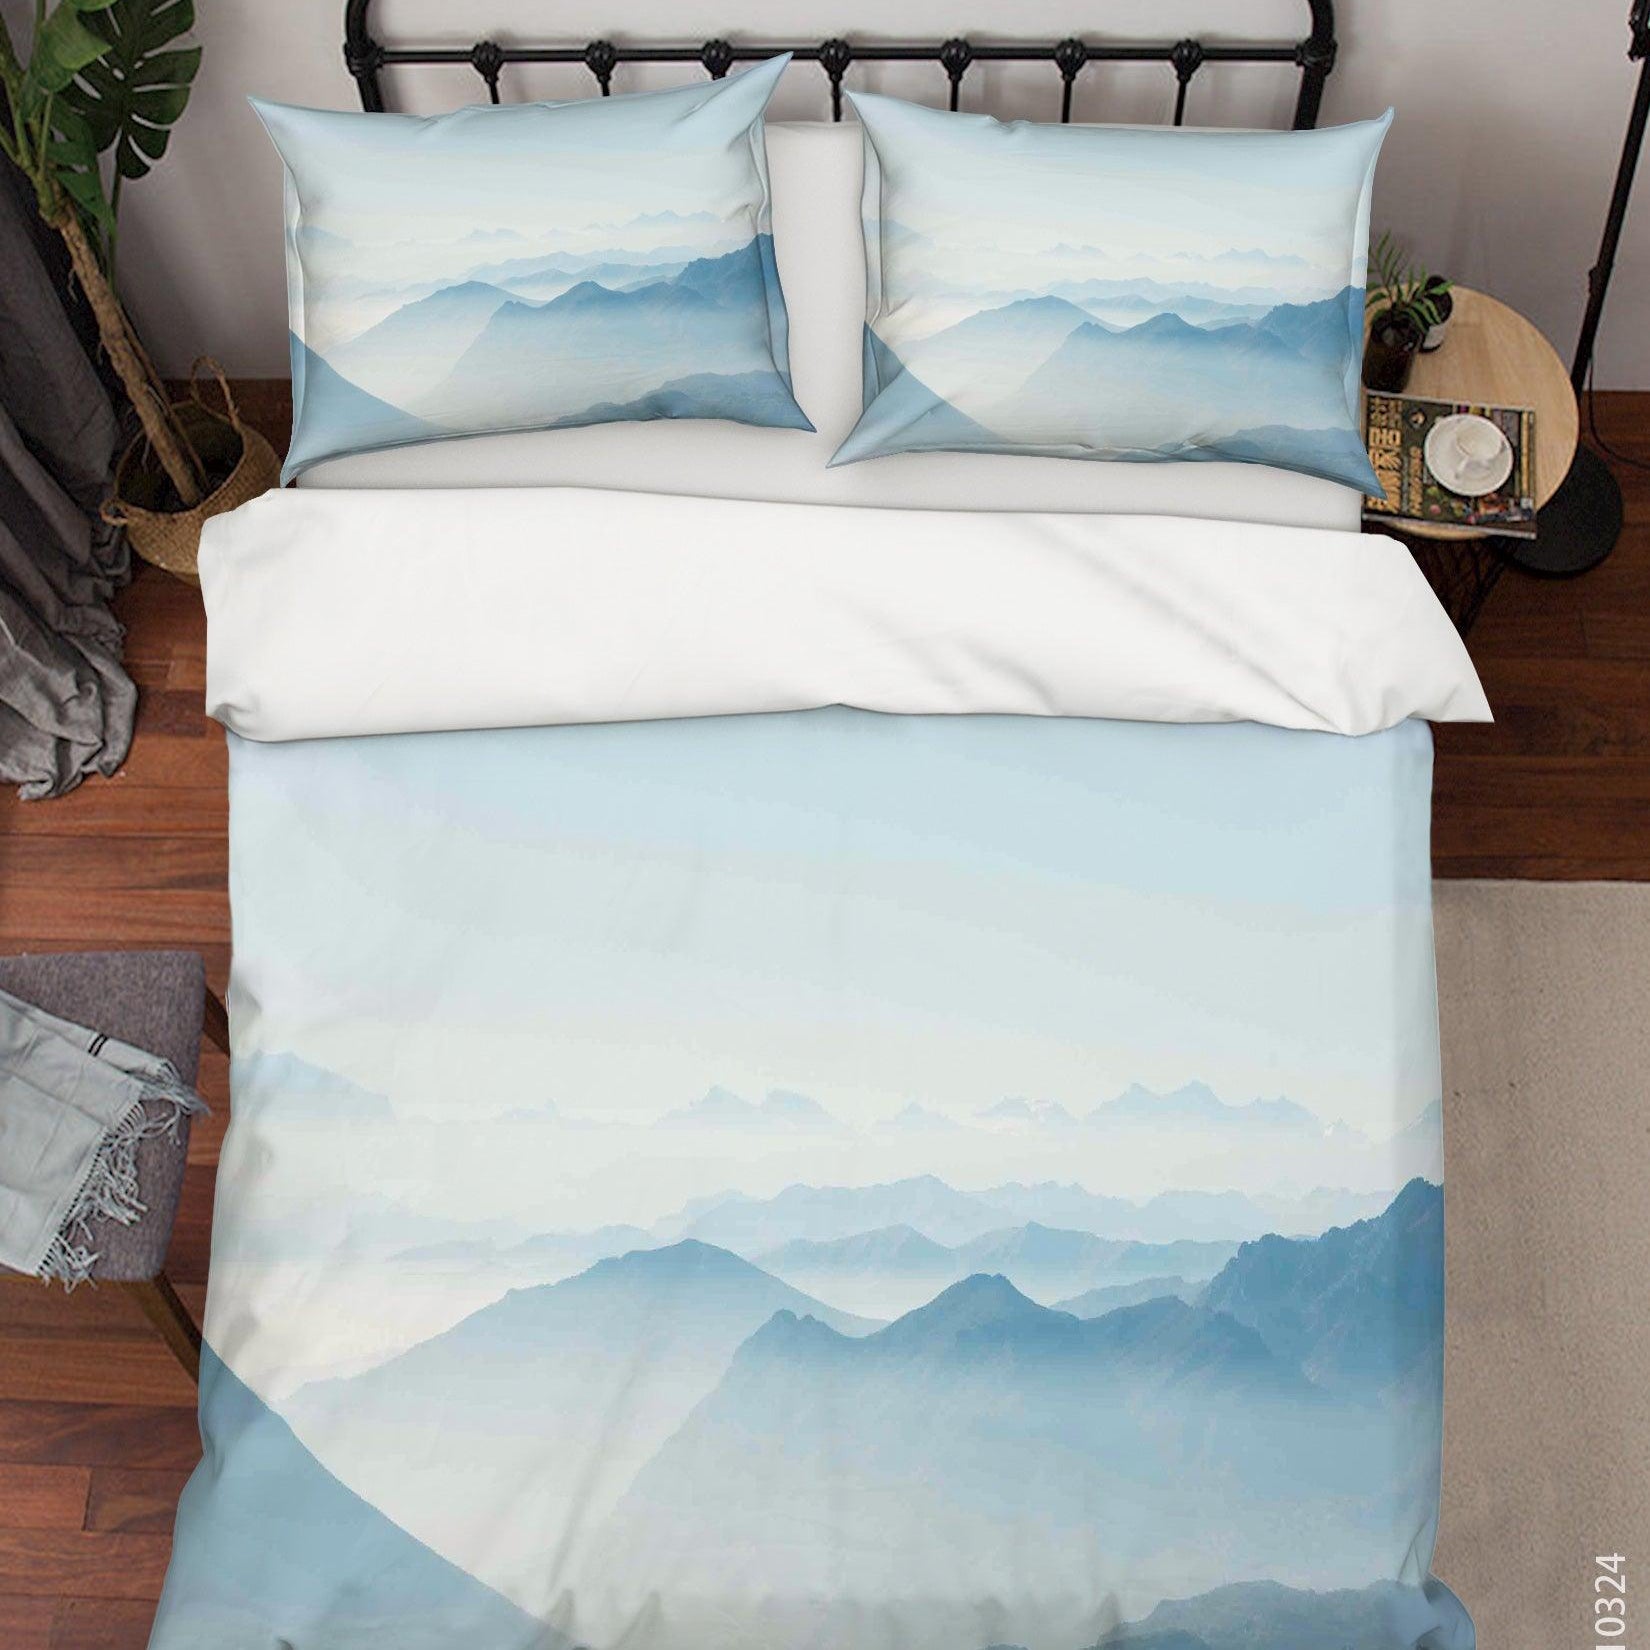 3D Watercolor Mountain Landscape Quilt Cover Set Bedding Set Duvet Cover Pillowcases 86 LQH- Jess Art Decoration